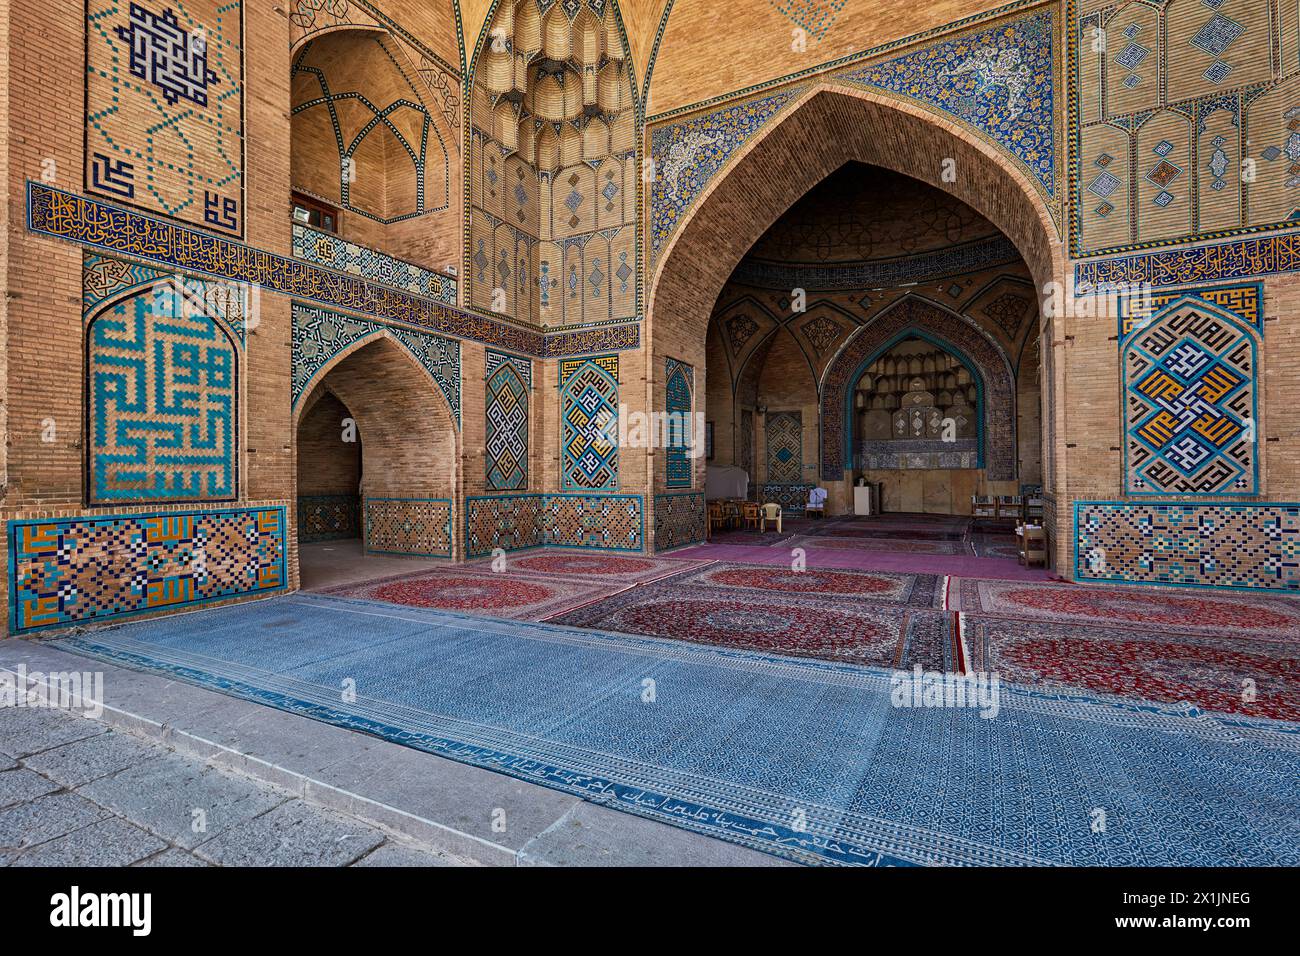 Vista interna della Moschea di Hakim con mosaici piastrellati ornamentali sulle pareti in mattoni e pavimento in moquette. Isfahan, Iran. Foto Stock